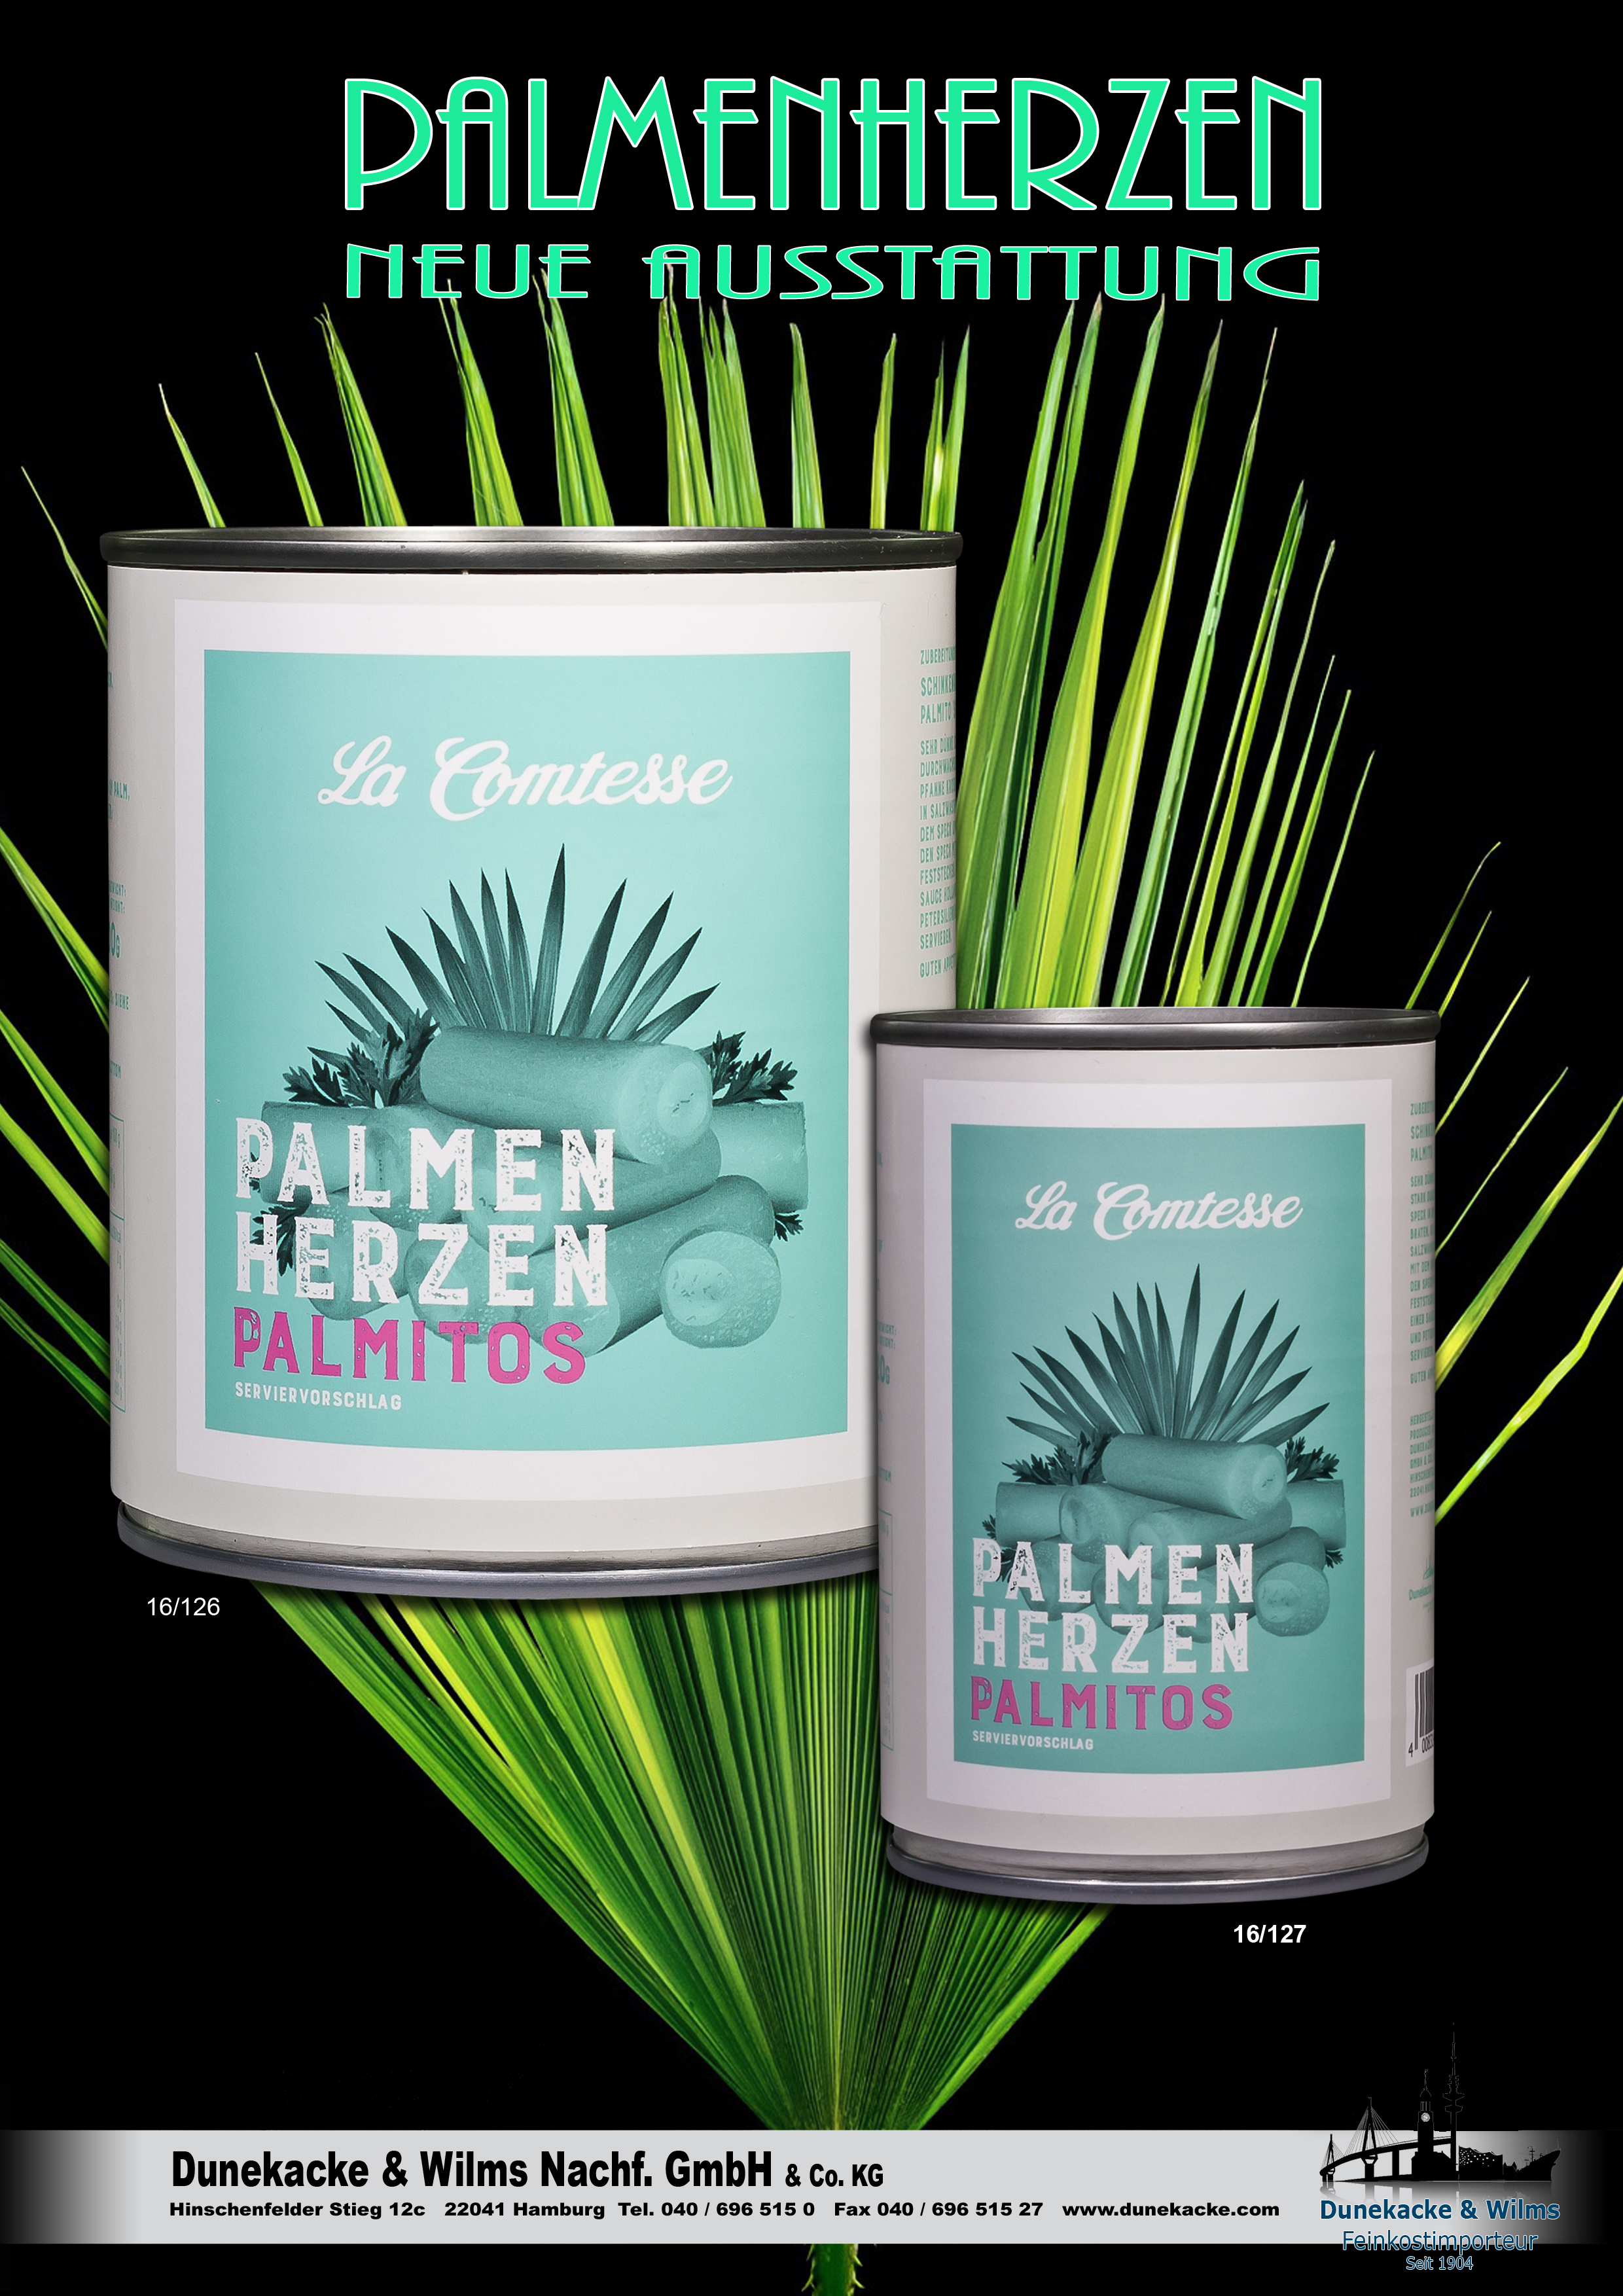 Palmitos, Palmenherzen, 400 g